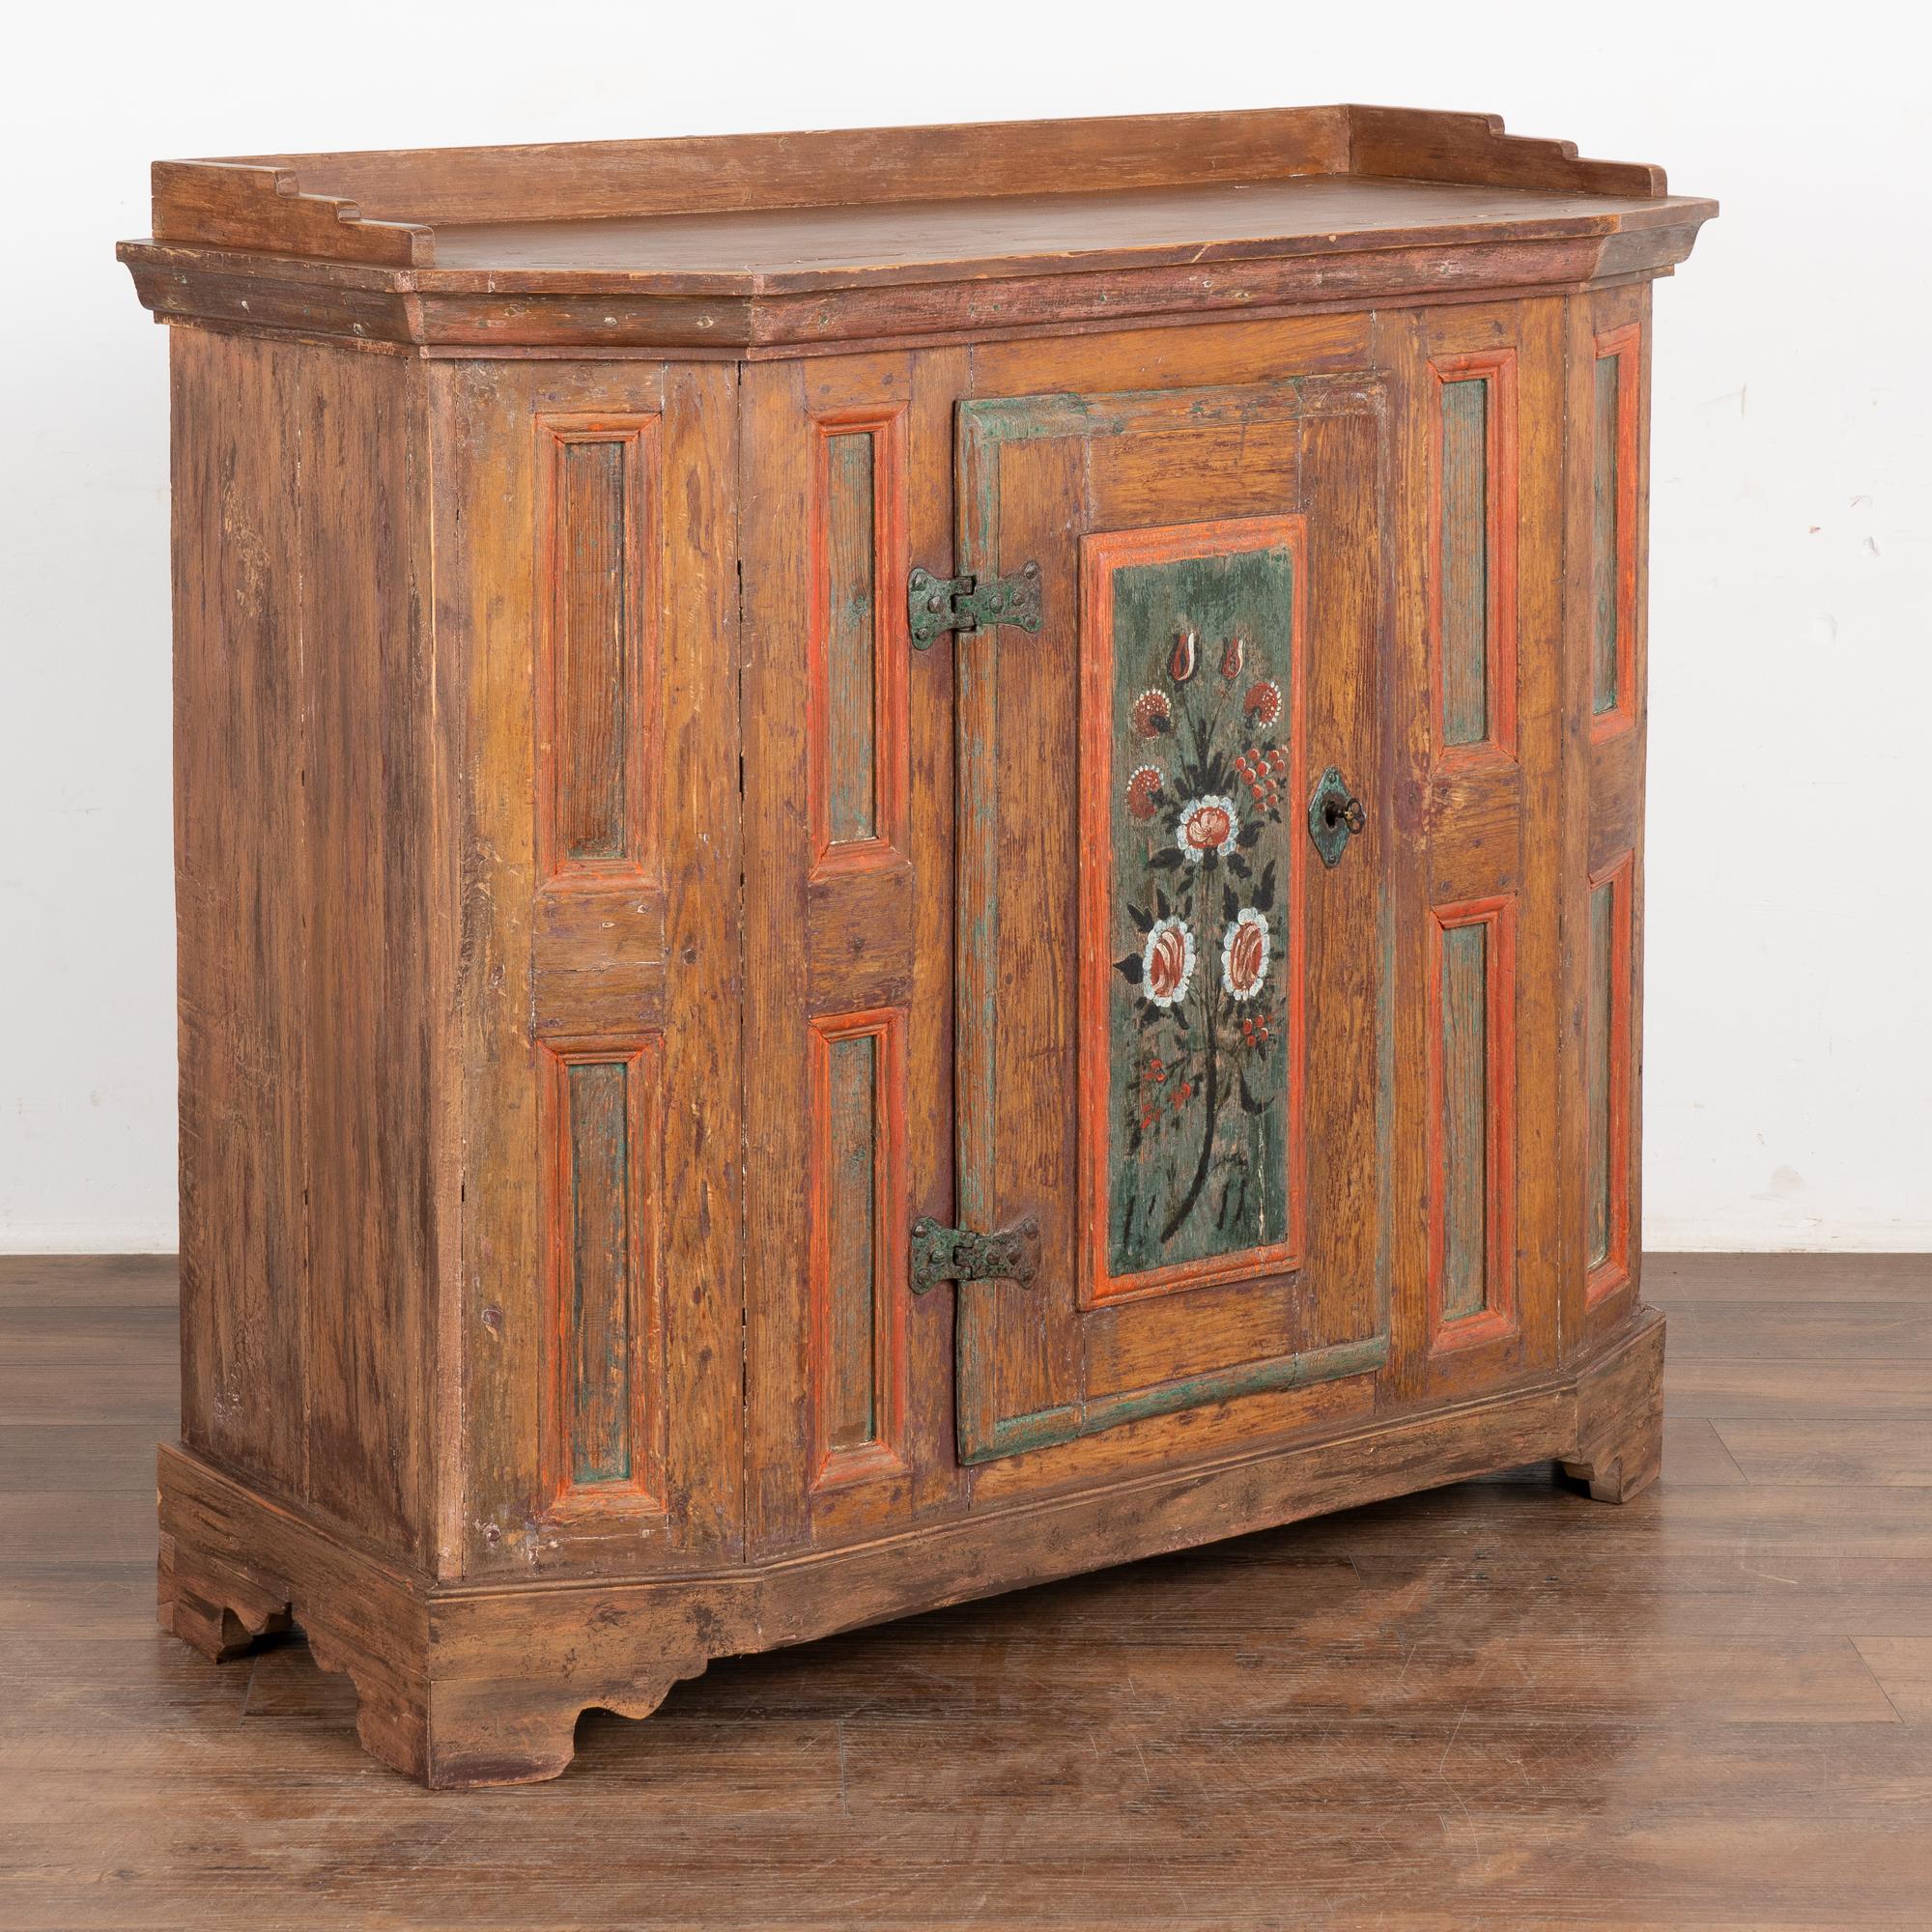 Dieser Schrank ist ein charmantes Beispiel für die schwedische Handwerkskunst des frühen 19. Jahrhunderts, sowohl für den Tischler als auch für den Maler, der ihn geschaffen hat. Die gealterte Patina der Lackierung zieht einen in ihren Bann.
Die